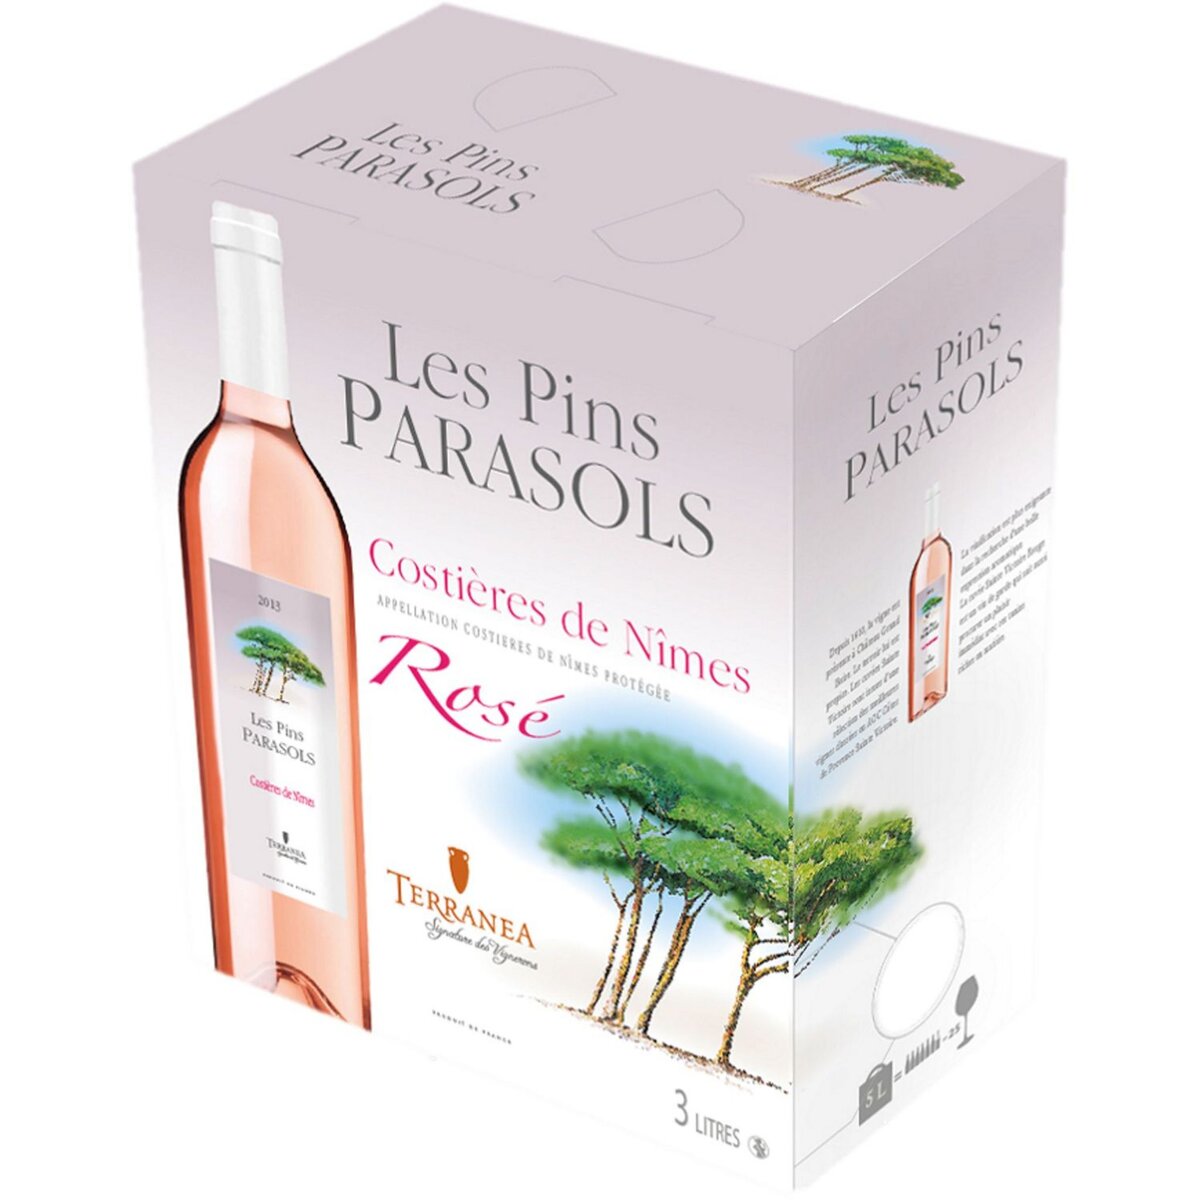 AOP Costières de Nîmes Les Pins Parasol rosé bib 3l